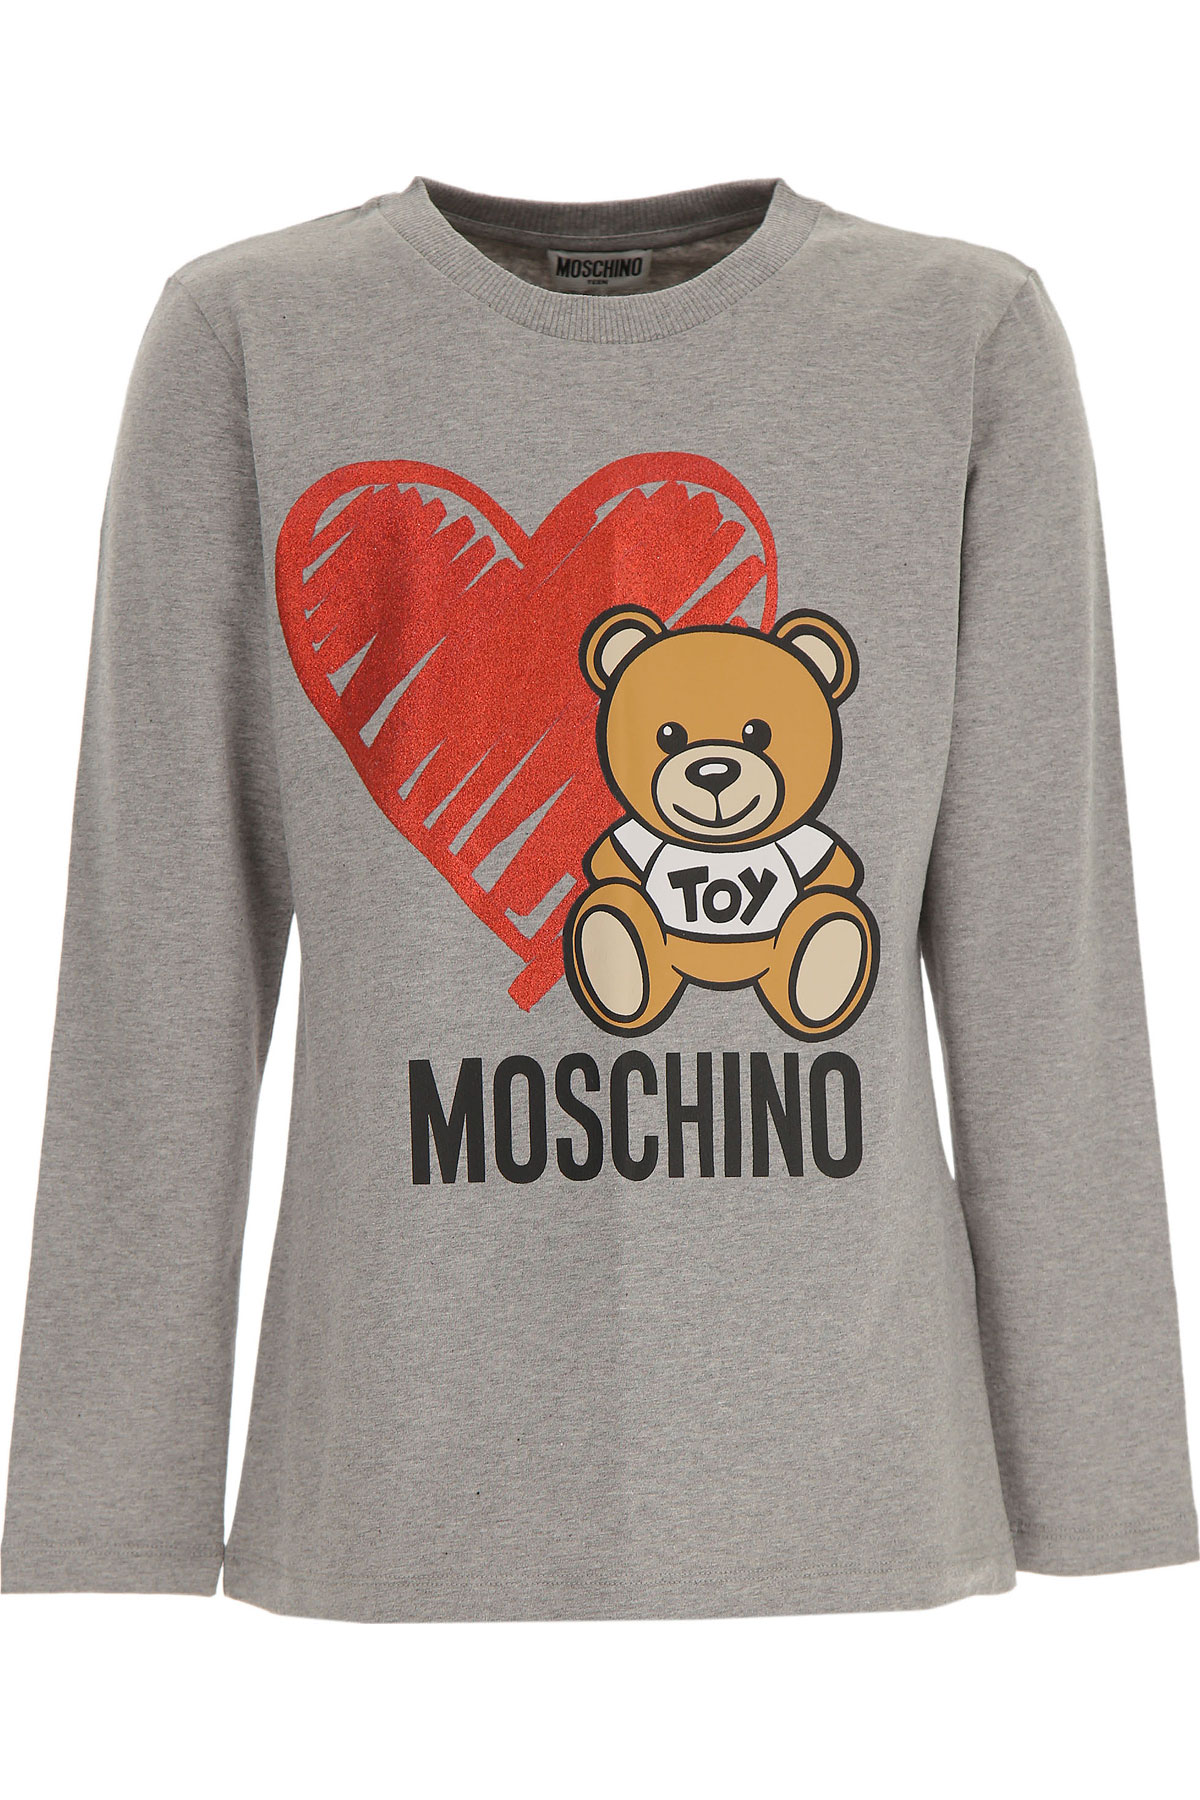 Moschino Kinder T-Shirt für Mädchen Günstig im Sale, Grau, Baumwolle, 2017, 10Y 12Y 14Y 4Y 5Y 6Y